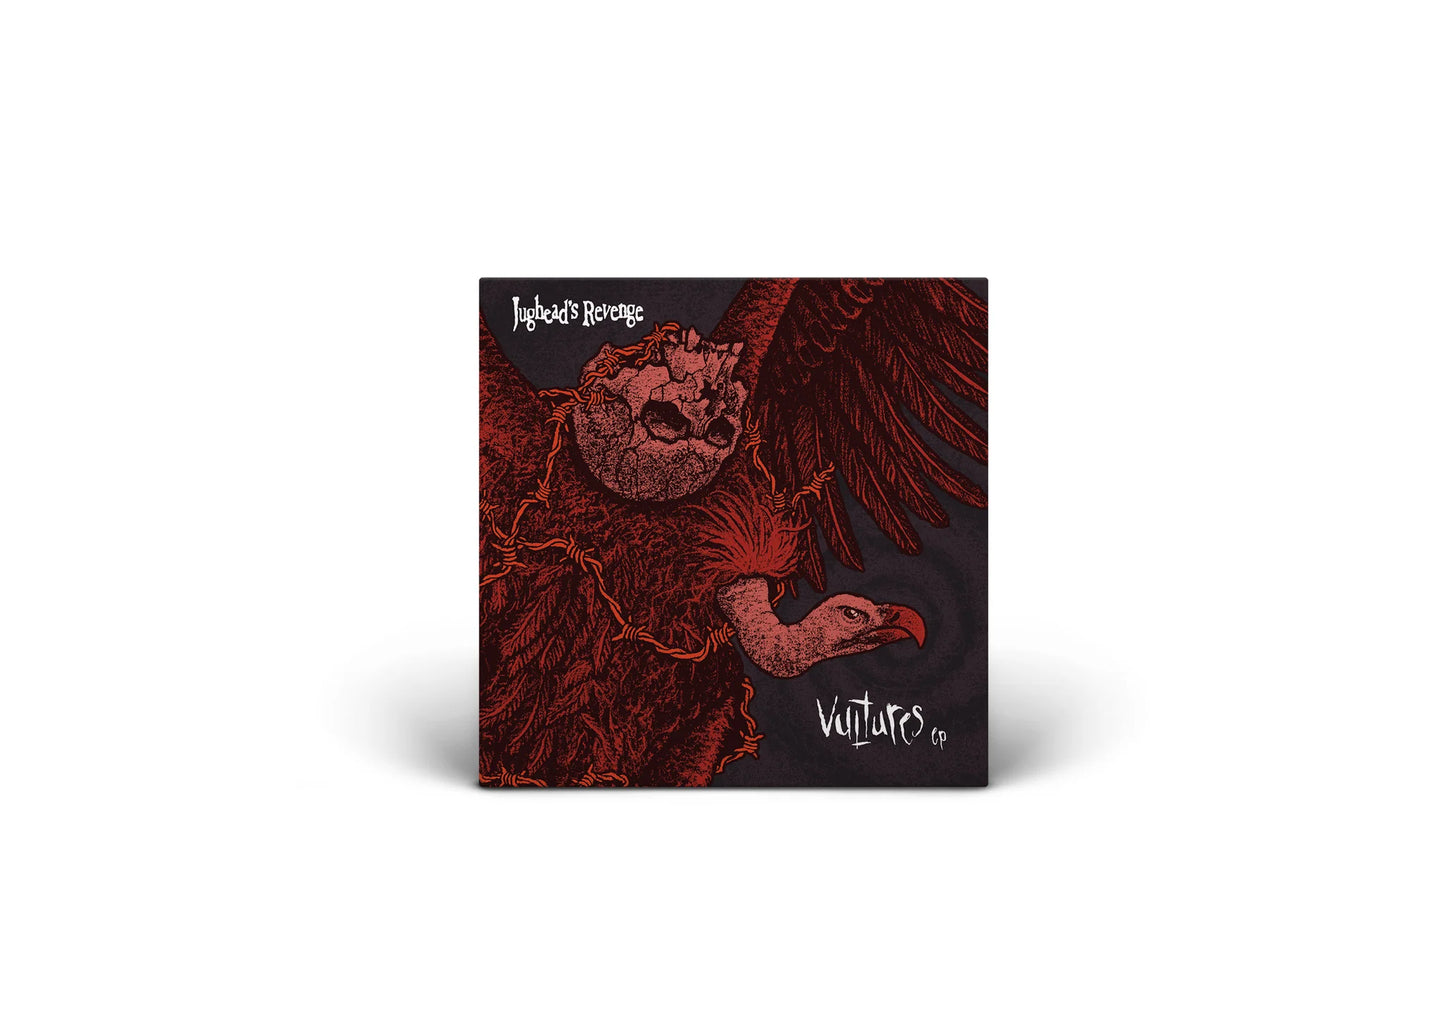 JUGHEAD'S REVENGE - "Vultures EP" (SBAM) (LP/CD)